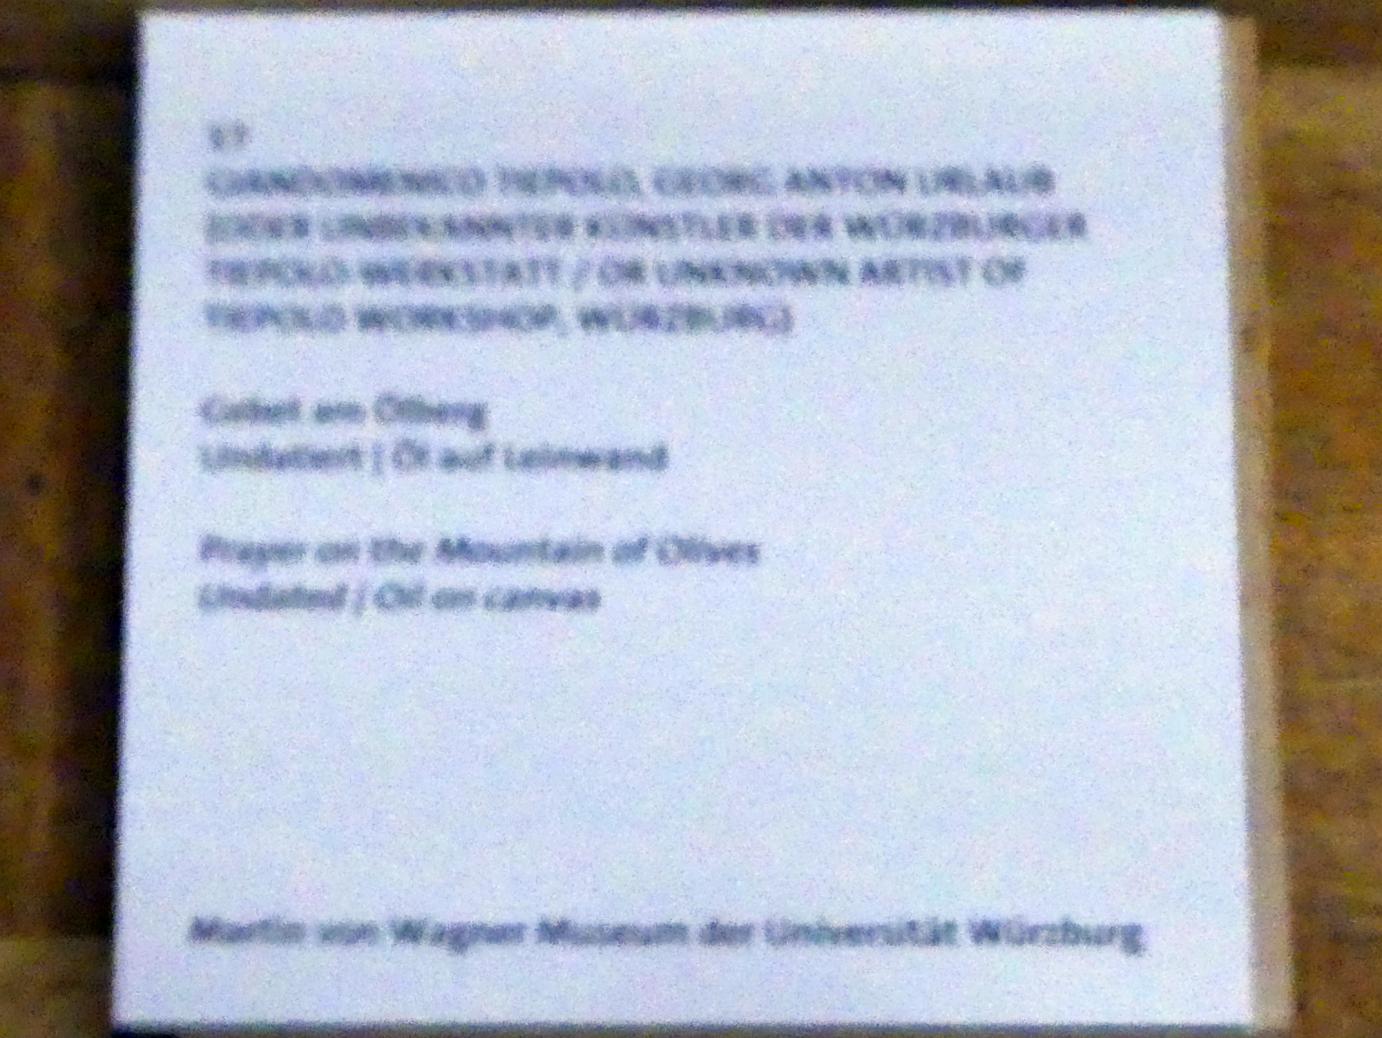 Giovanni Domenico Tiepolo (1743–1785), Gebet am Ölberg, Würzburg, Martin von Wagner Museum, Ausstellung "Tiepolo und seine Zeit in Würzburg" vom 31.10.2020-15.07.2021, Saal 2, Undatiert, Bild 2/2